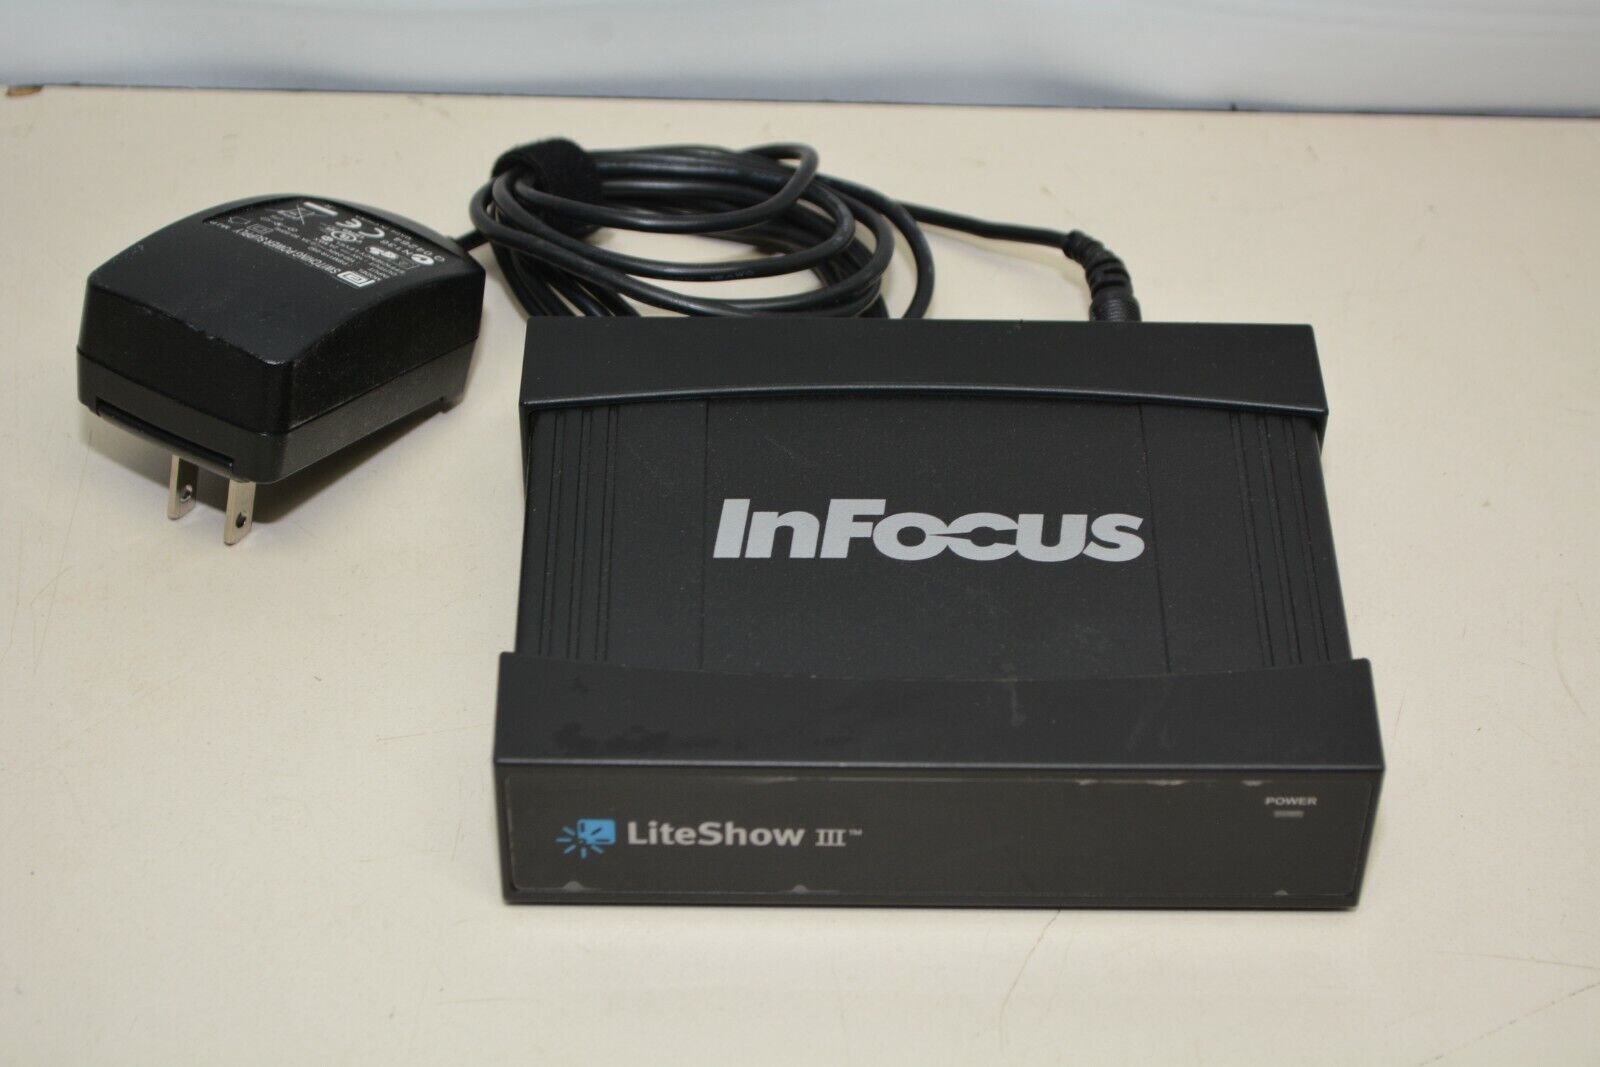 InFocus LiteShow III INLITESHOW3 Wireless Display Presentation Adapter #L297